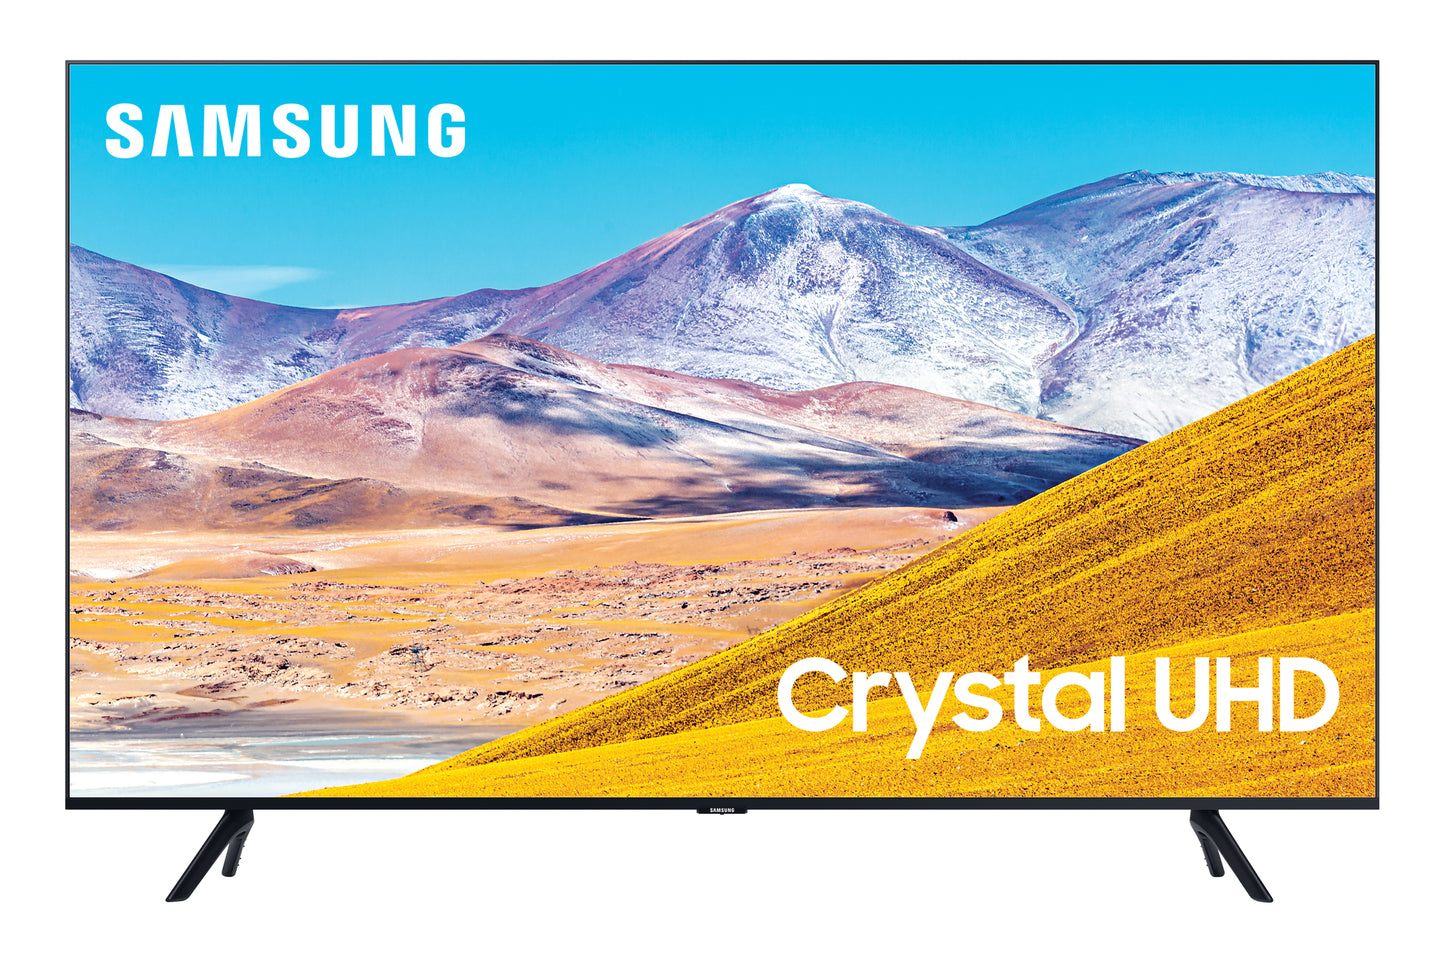 Samsung 65-in TU8000 Crystal UHD 4K UHD Smart TV UN65TU8000FXZA (2020)